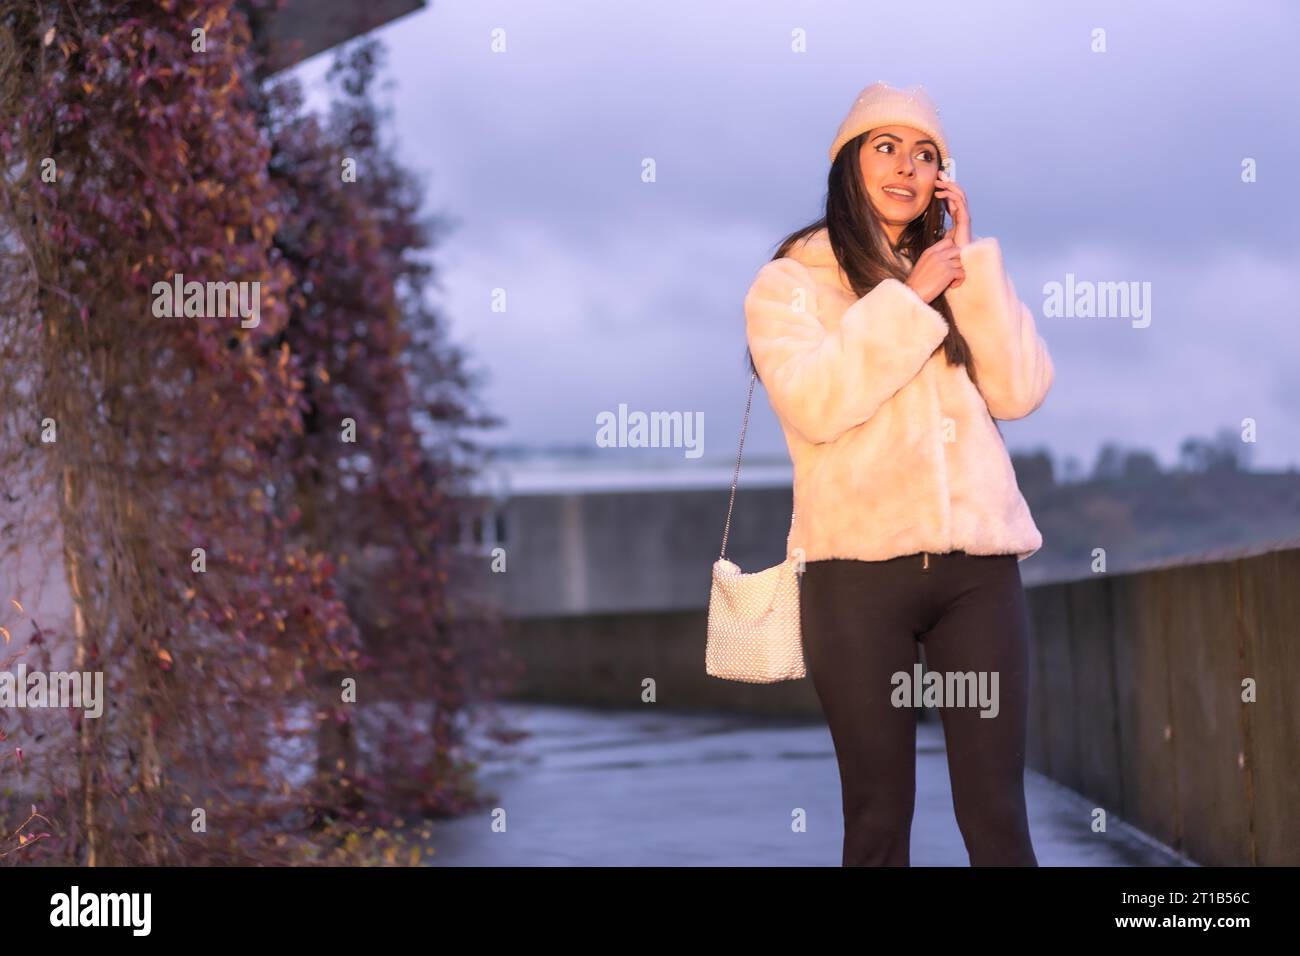 Jeune jolie brunette caucasienne marchant dans la ville en hiver, portant un pull en laine rose Banque D'Images